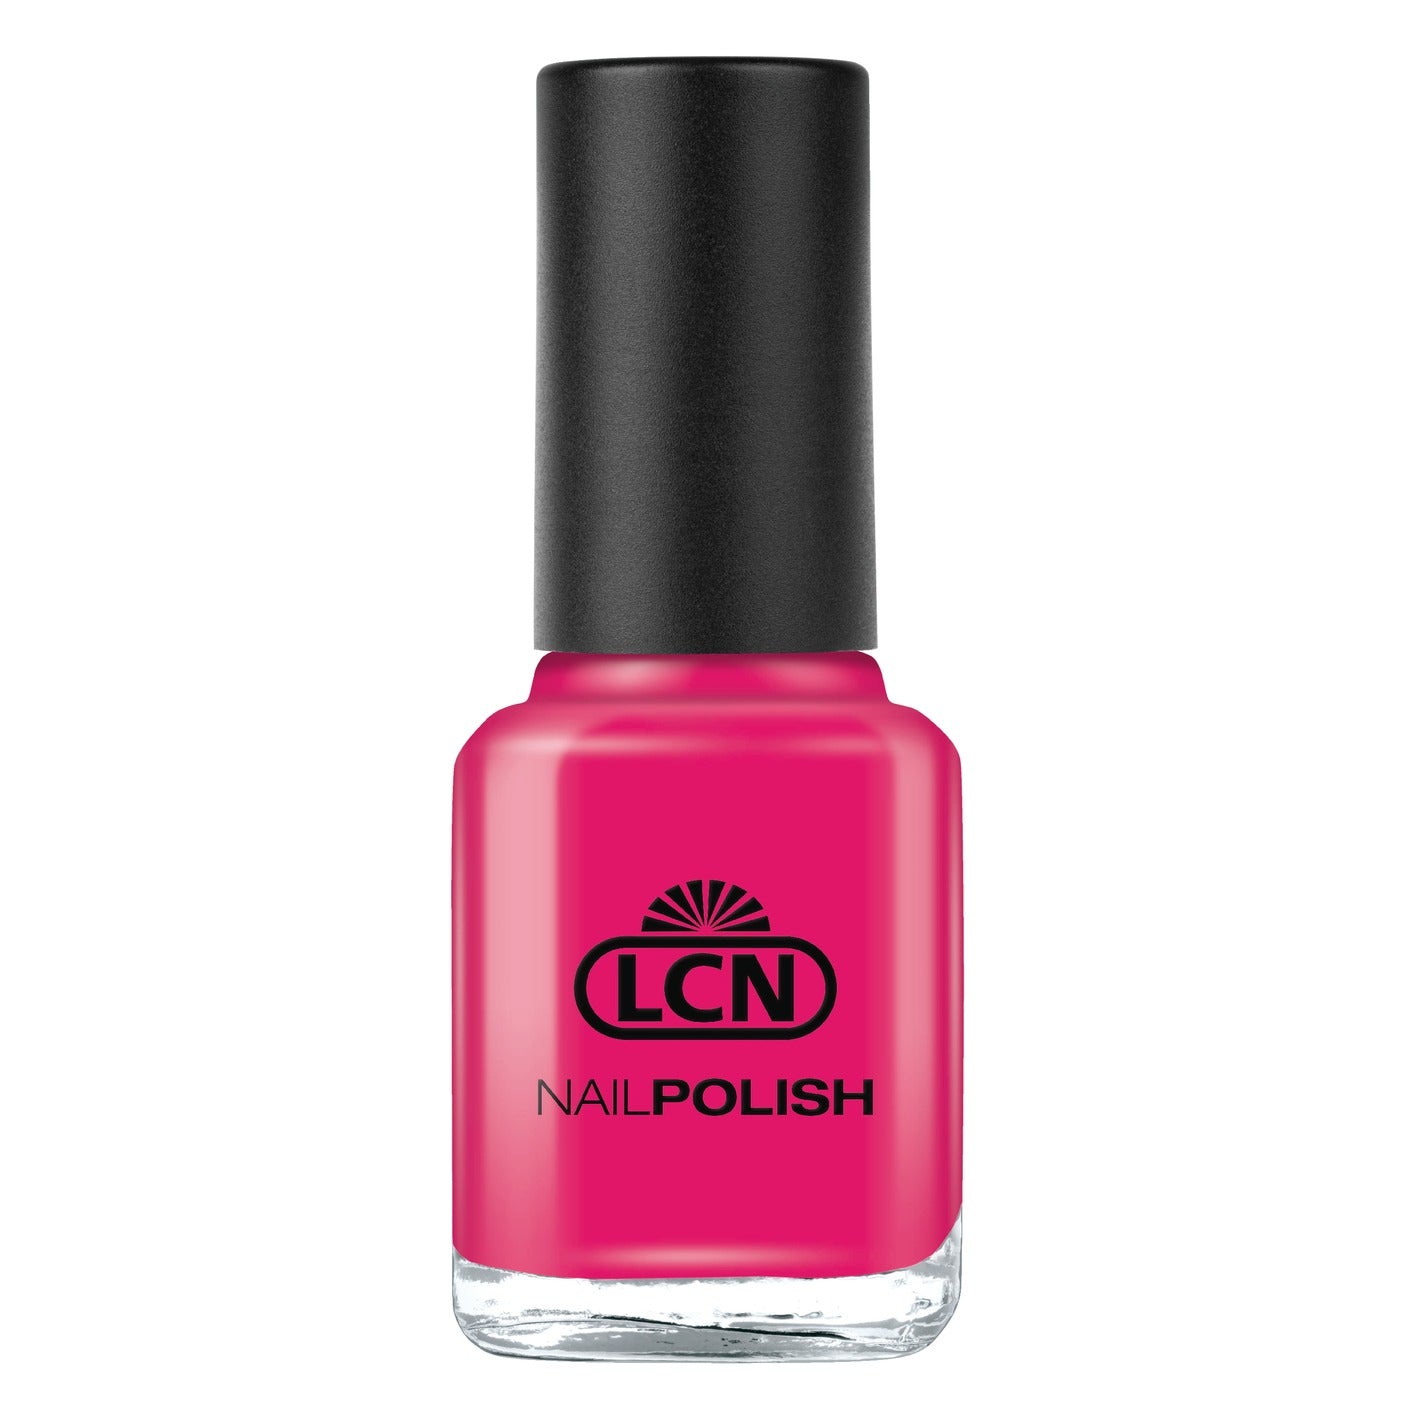 LCN Nail Polish, 261 hot pink, 8ml